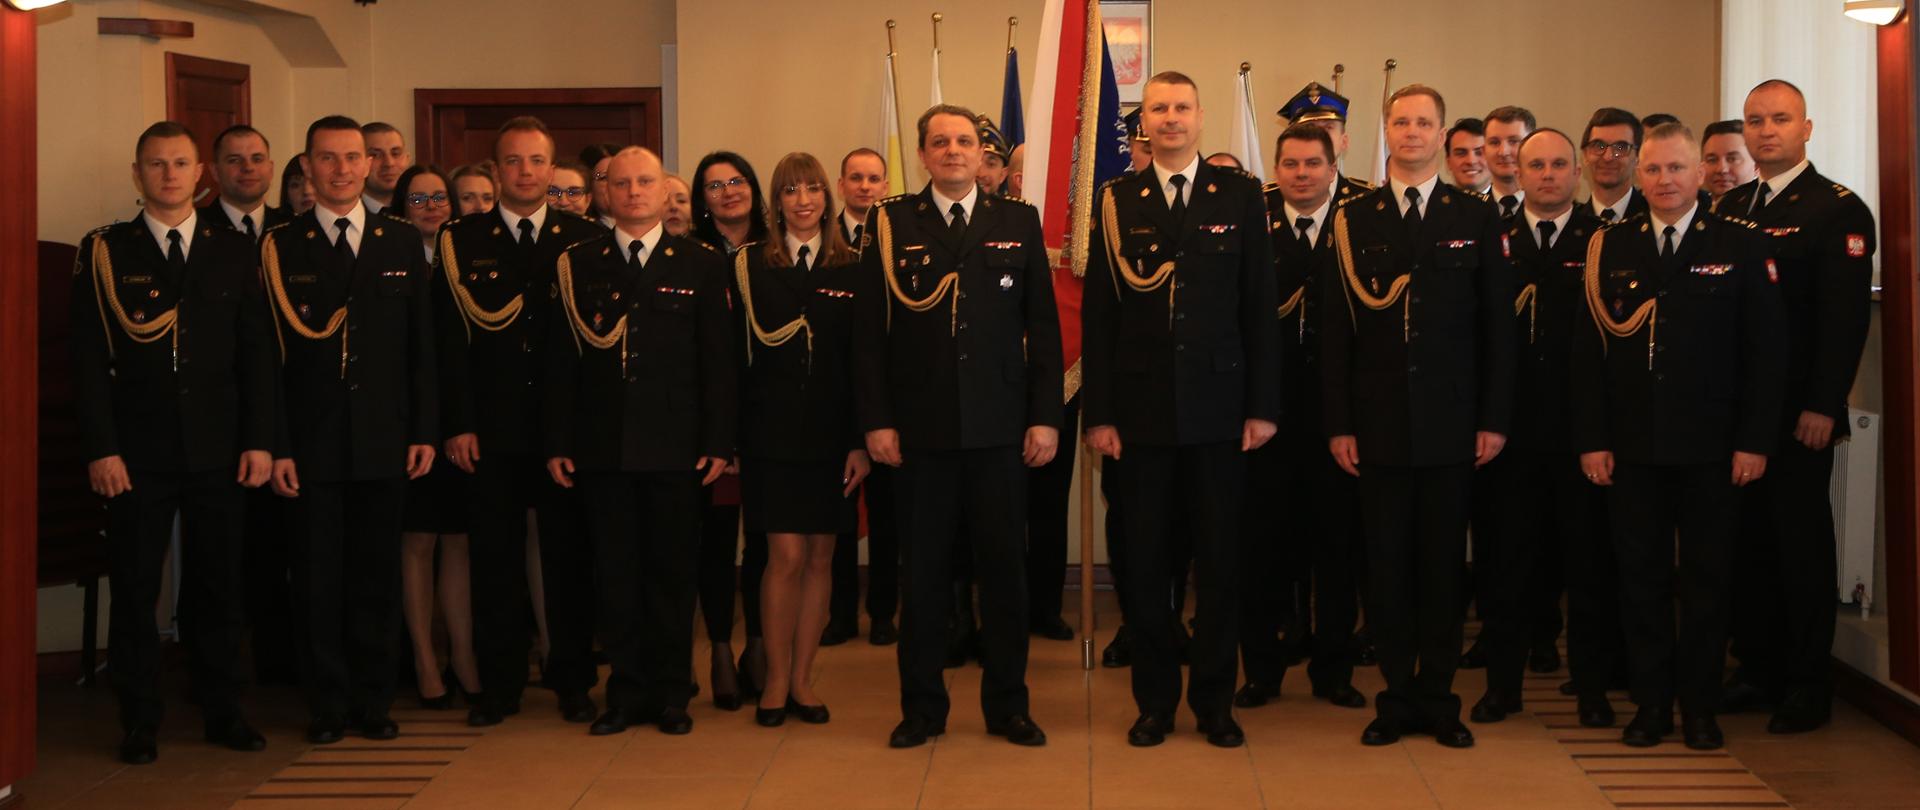 Uroczysta zbiórka z okazji powierzenia pełnienia obowiązków Podlaskiego Komendanta Wojewódzkiego Państwowej Straży Pożarnej